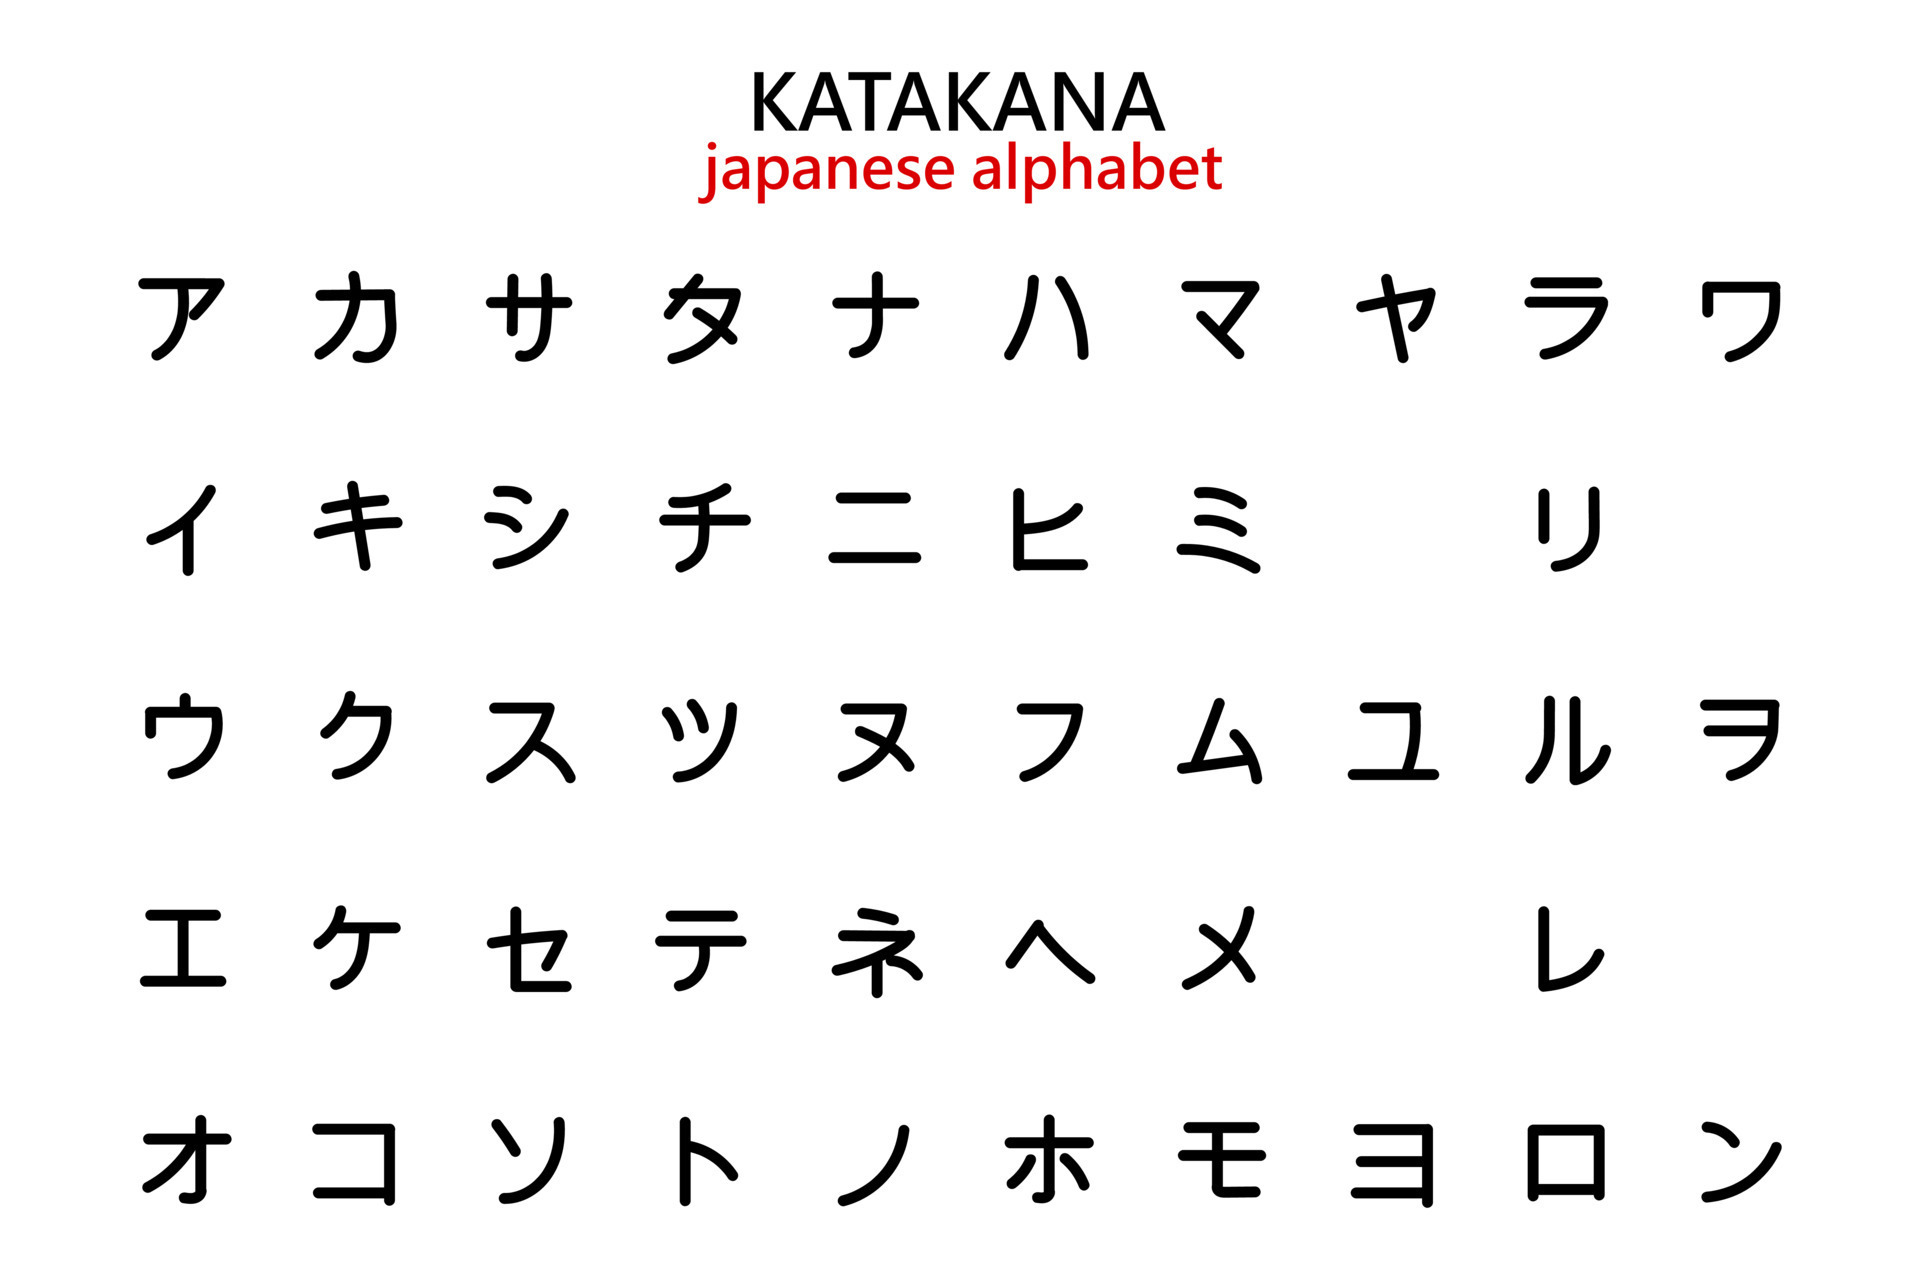 Traducido abecedario japones